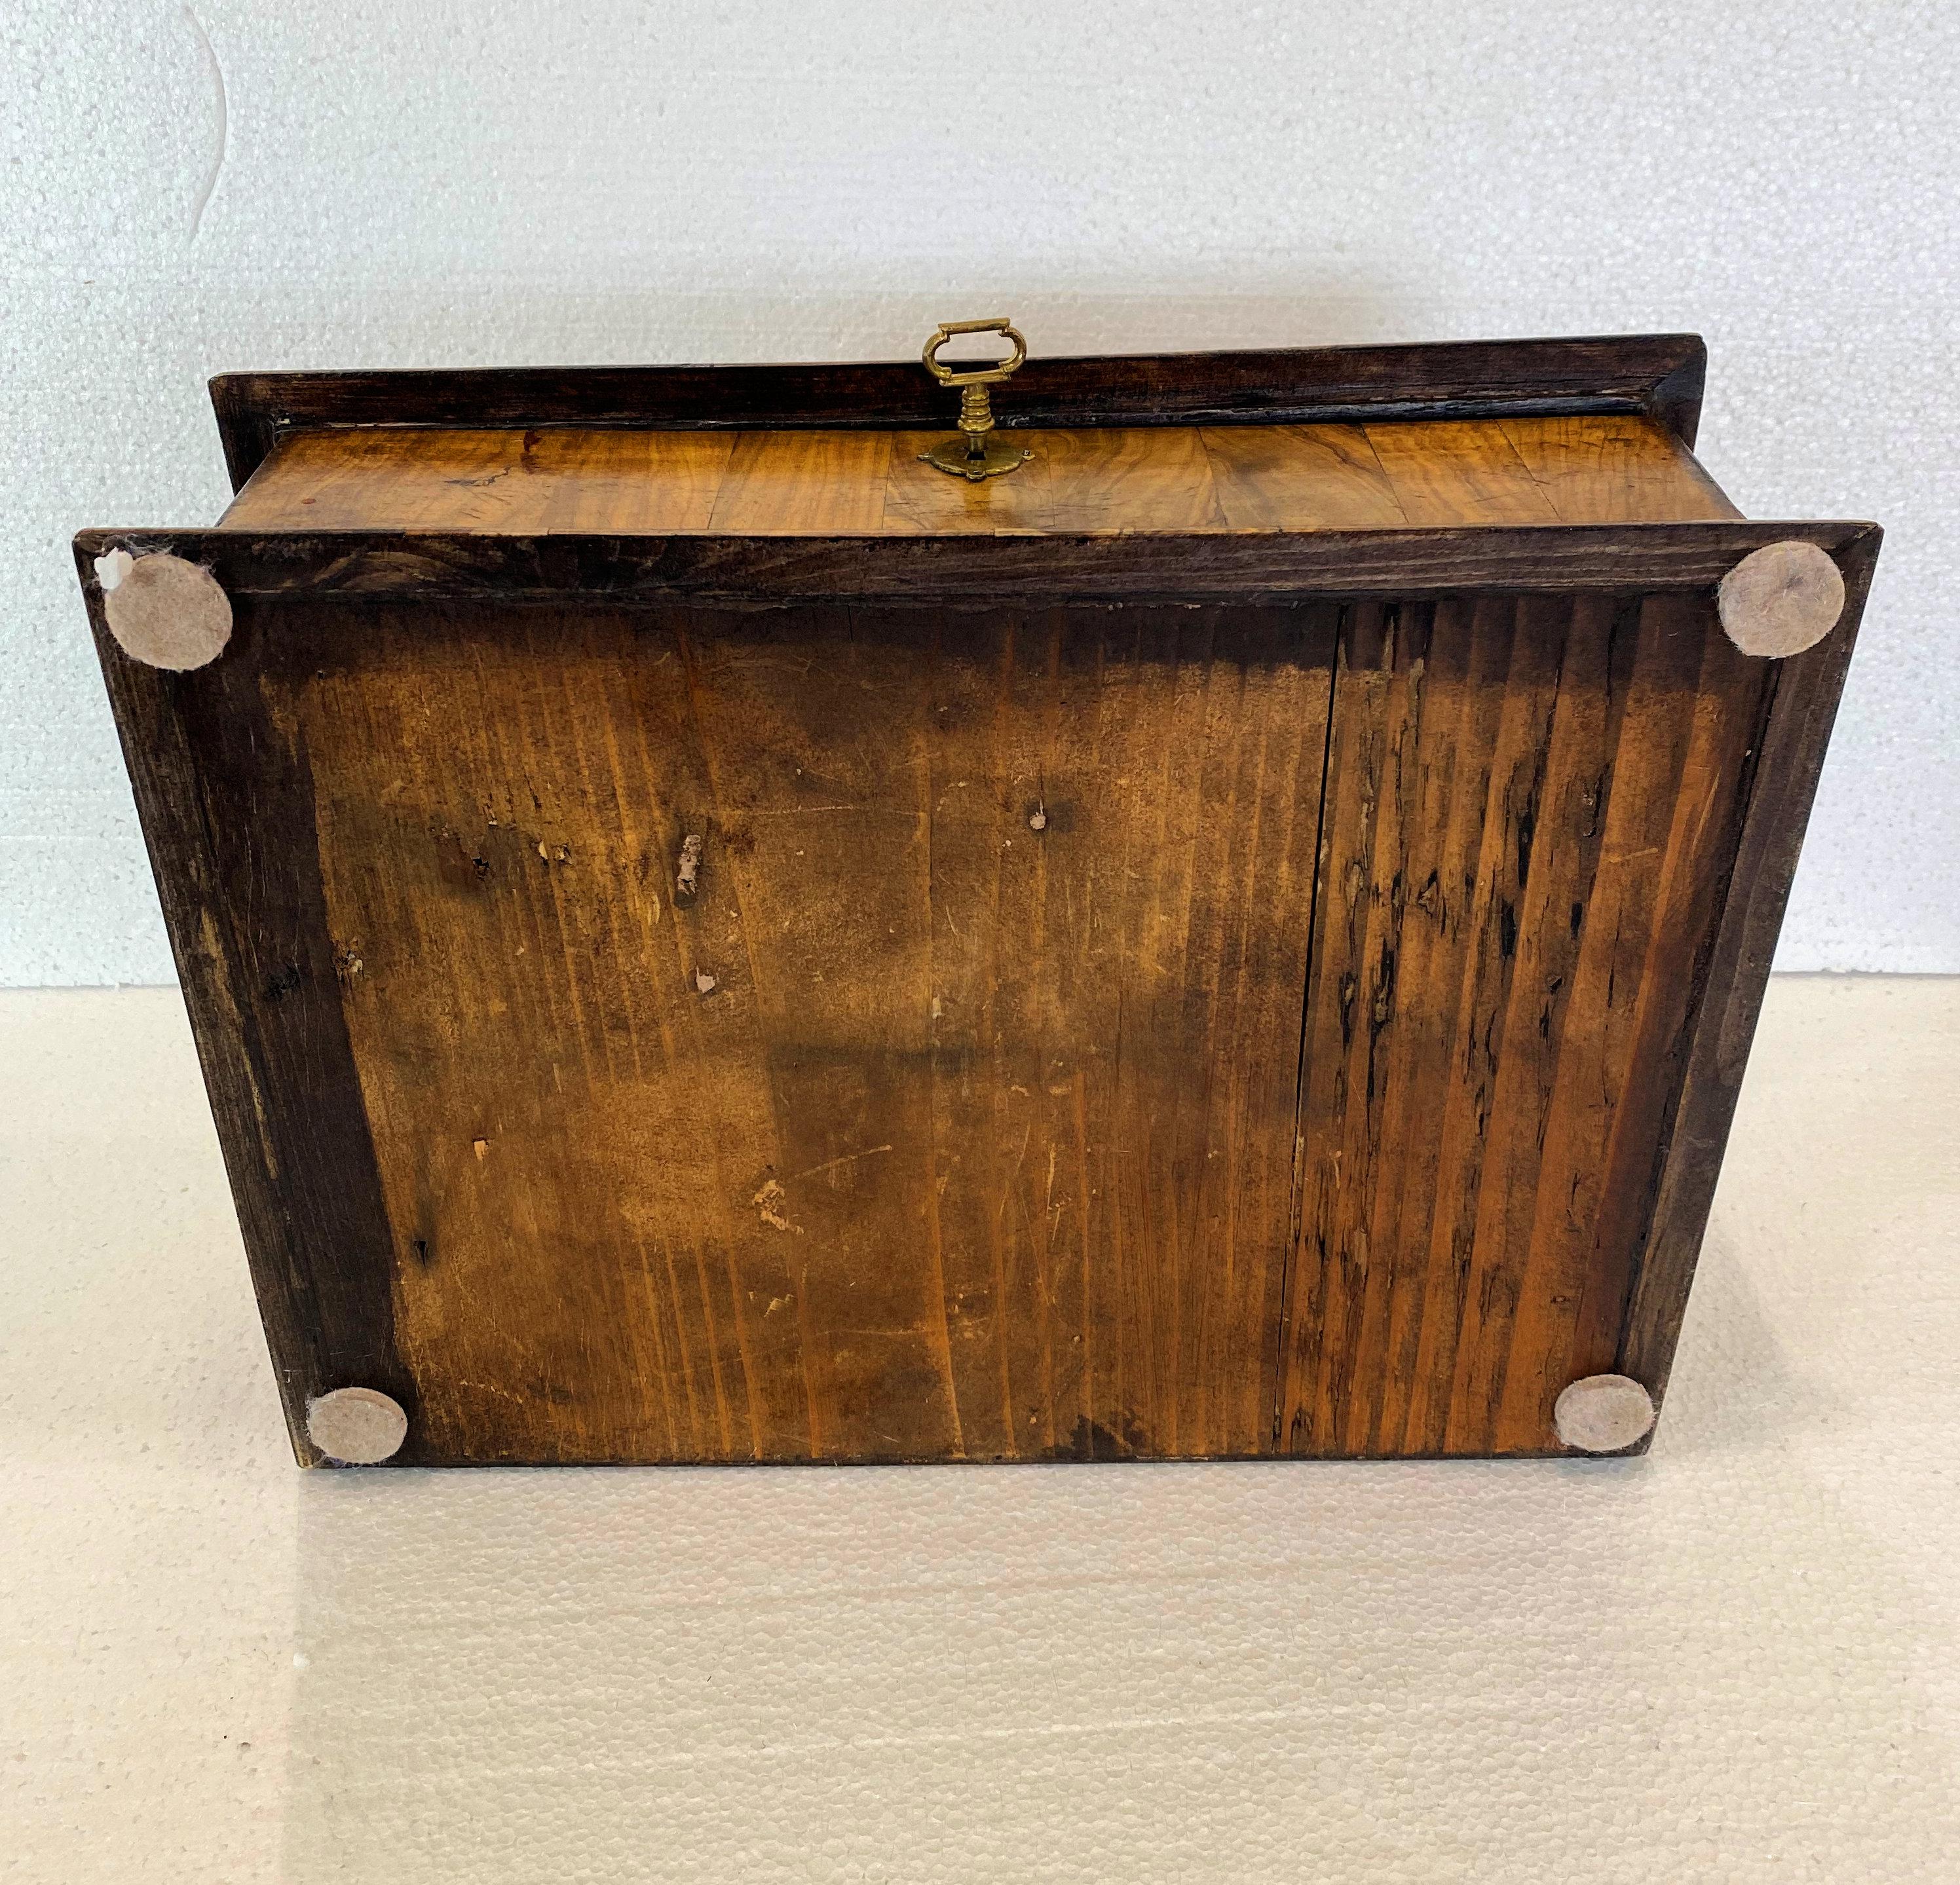 Cette très belle boîte à dentelle de style William and Mary a été conçue à partir de vieux bois de chêne, puis recouverte d'un placage d'huître d'olive. Cette boîte devait à l'origine servir à ranger de la dentelle, mais elle ferait également une